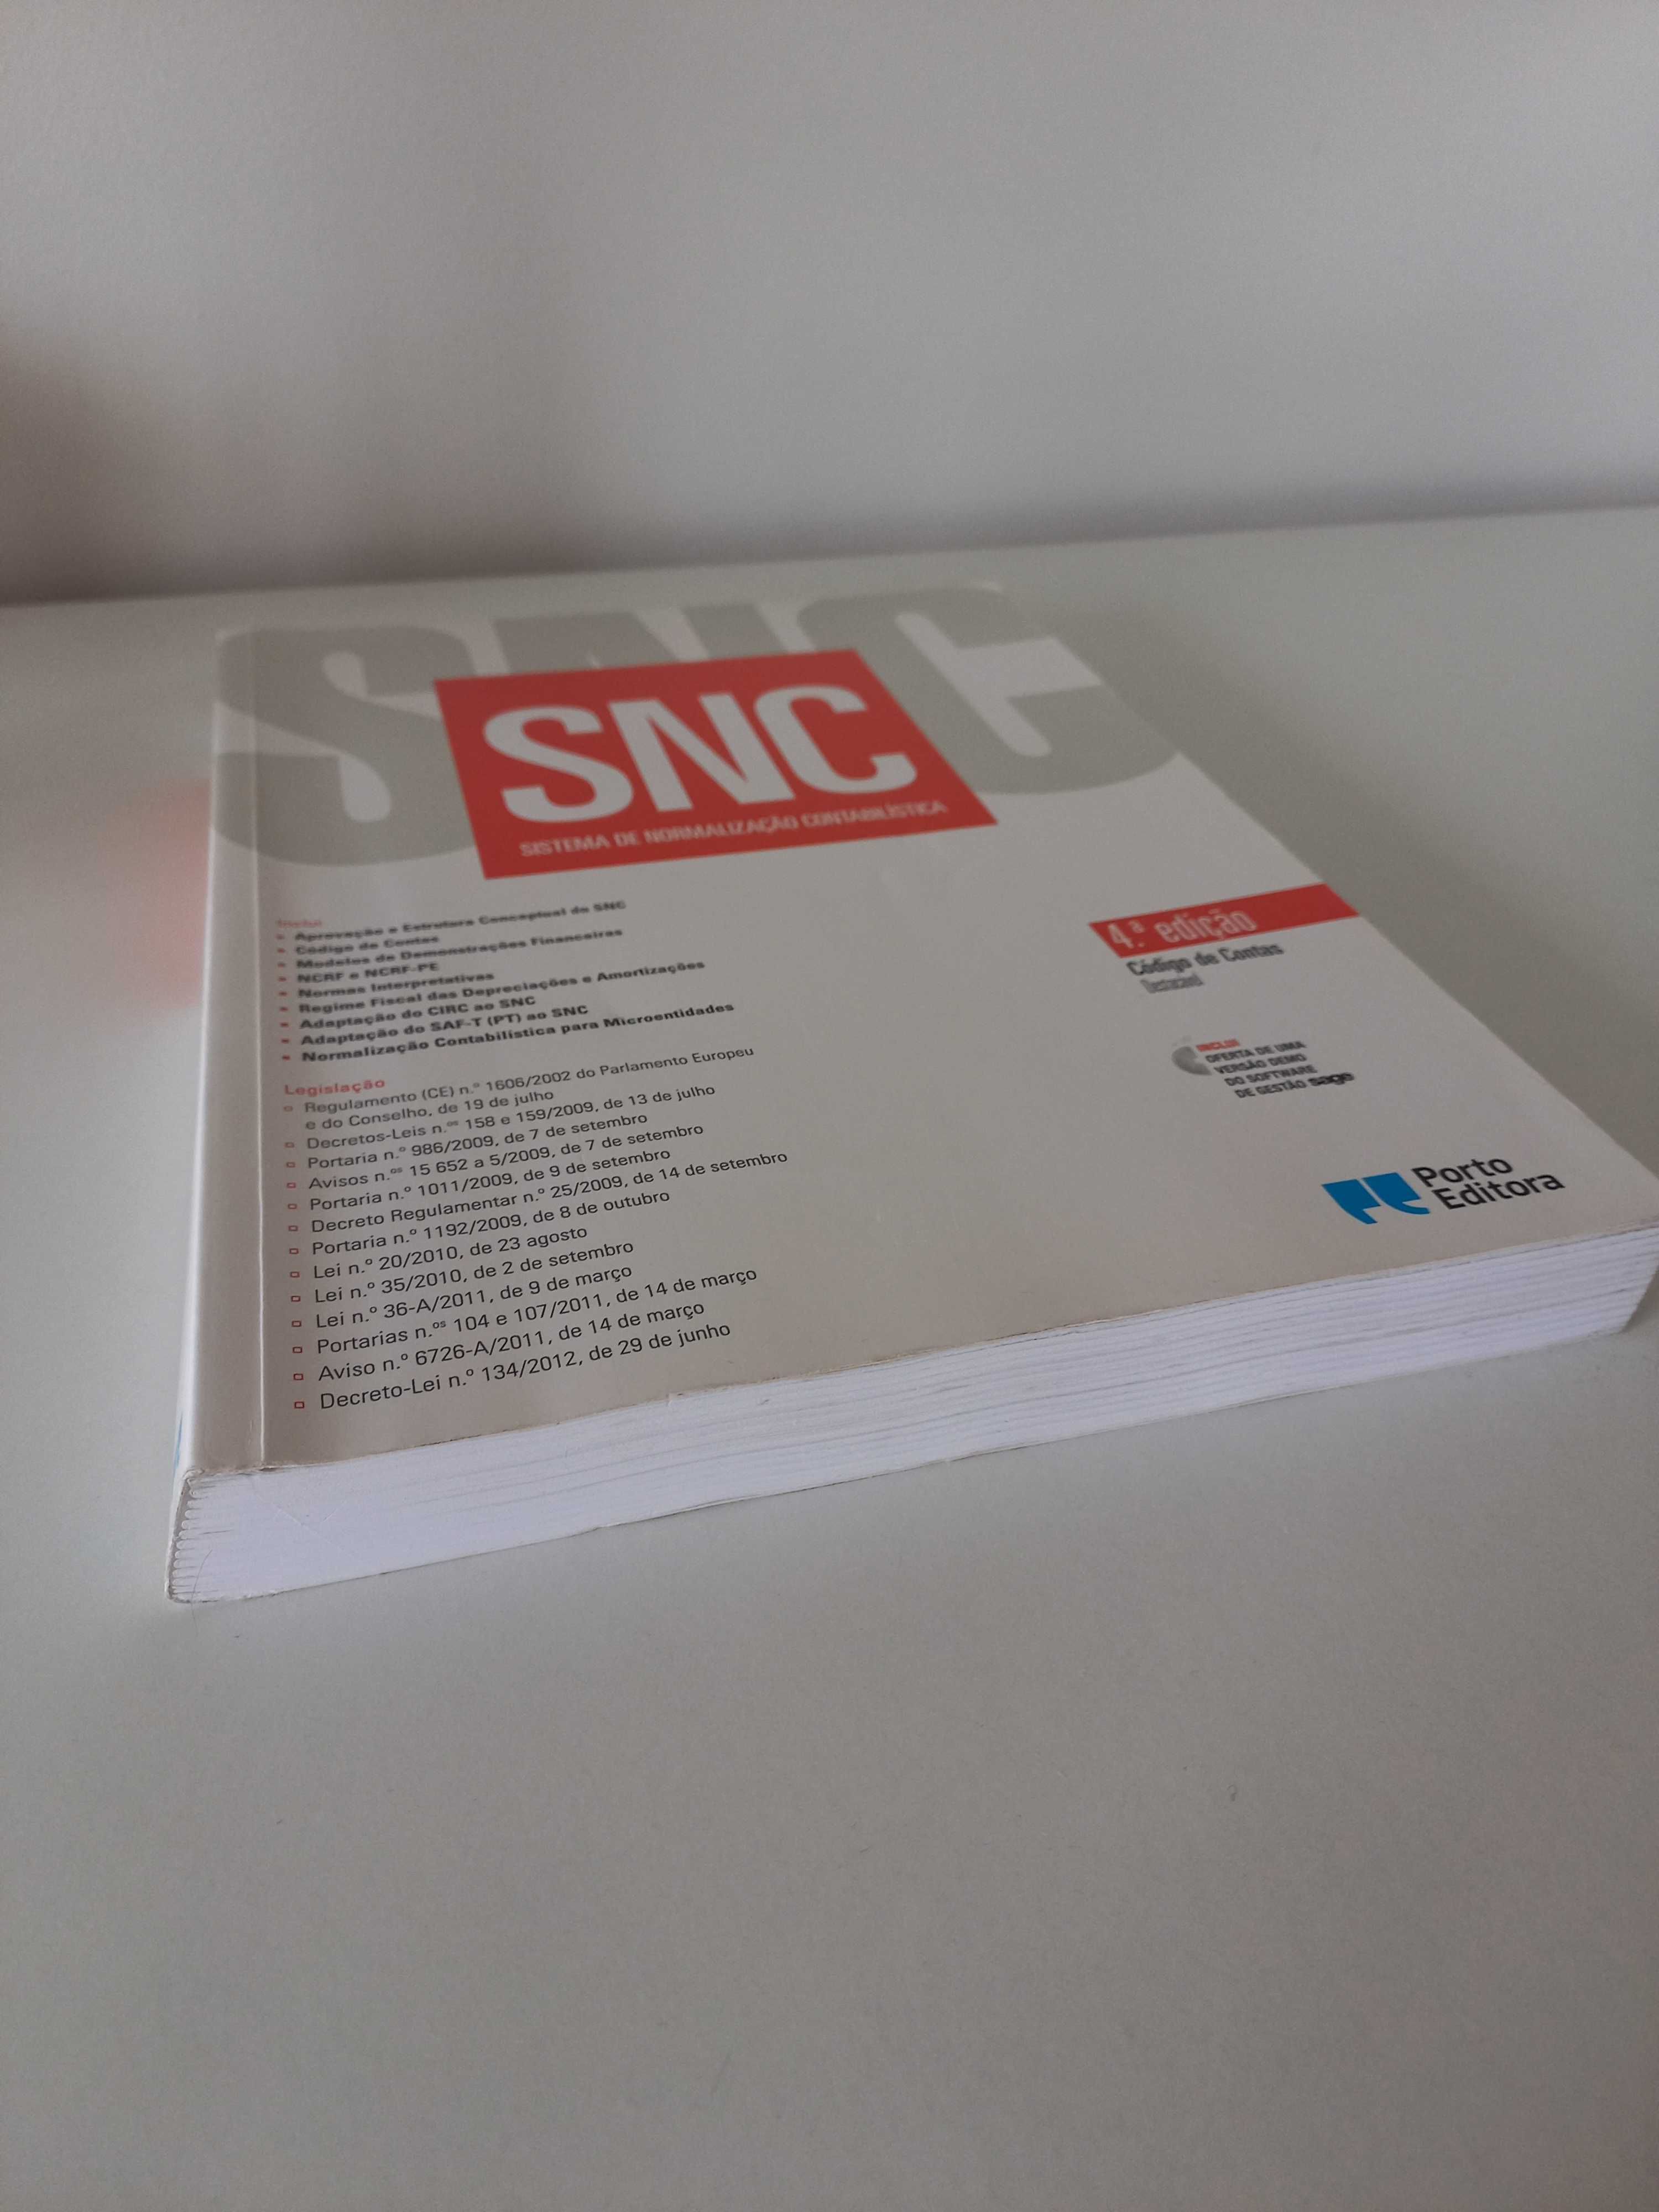 SNC - Sistema de Normalização Contabilista